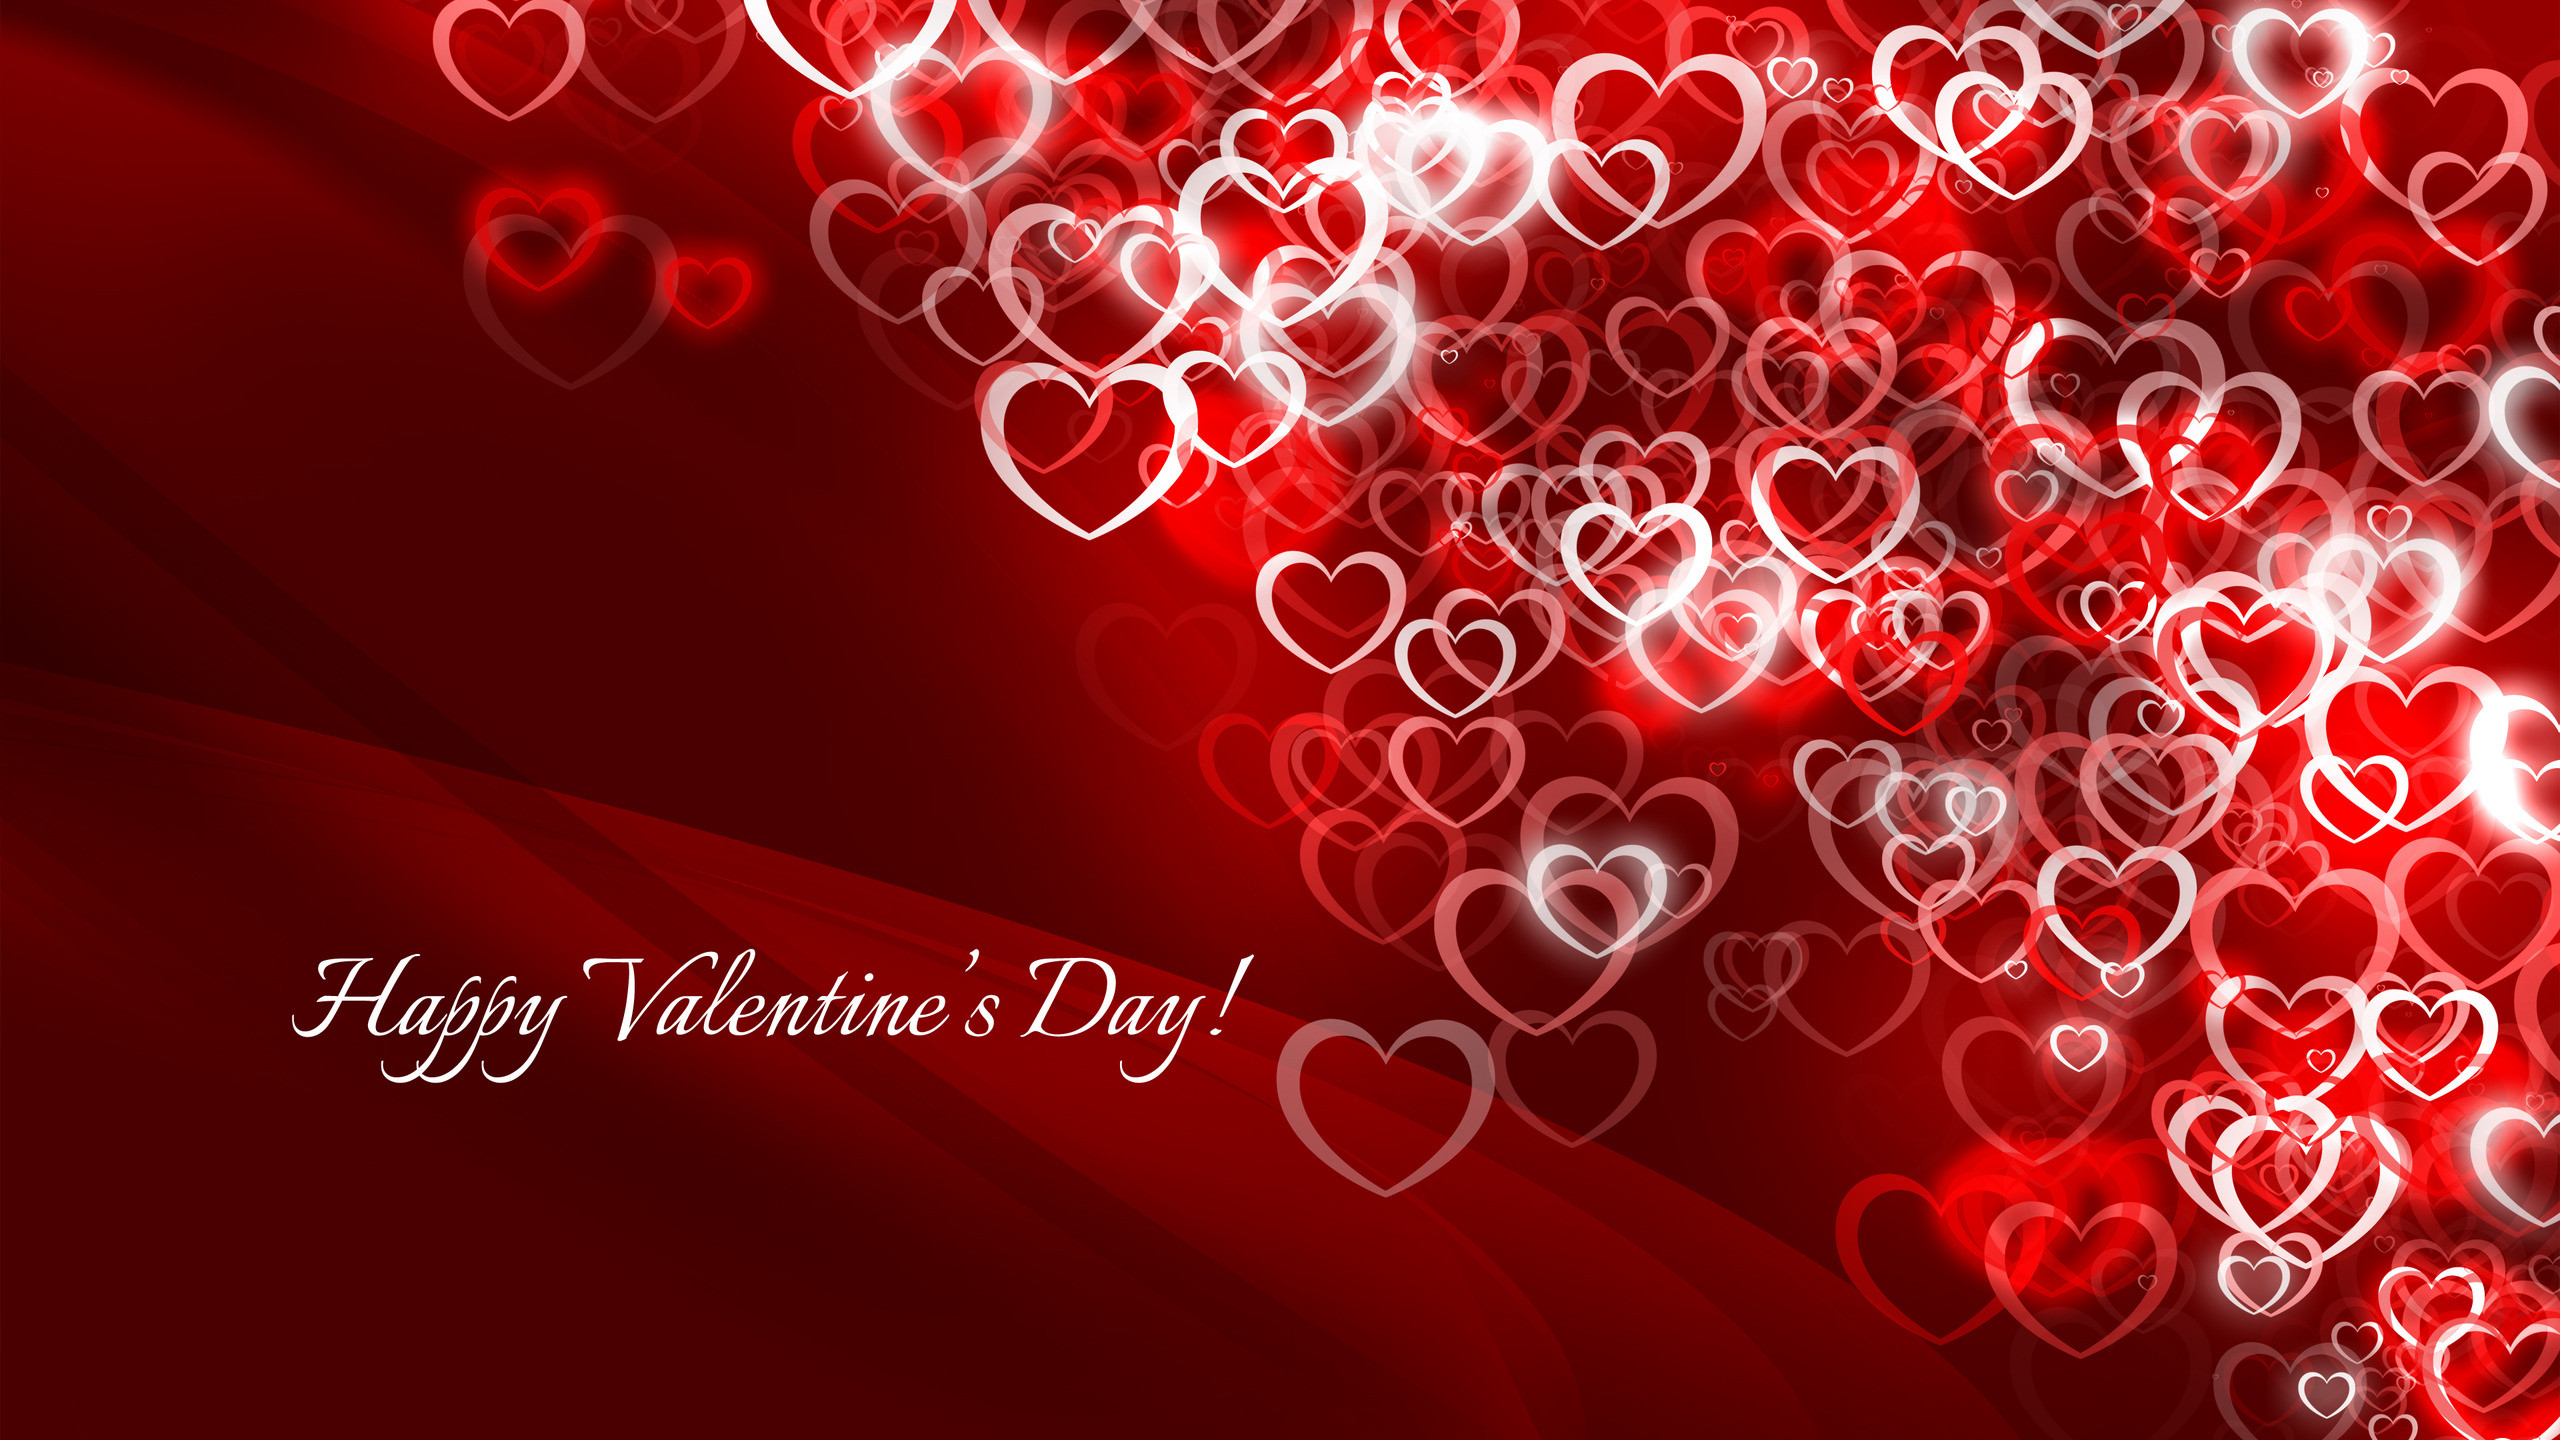 2560x1440 Boy & girl happy valentine day hd wallpaper | Valentines day ideas |  Pinterest